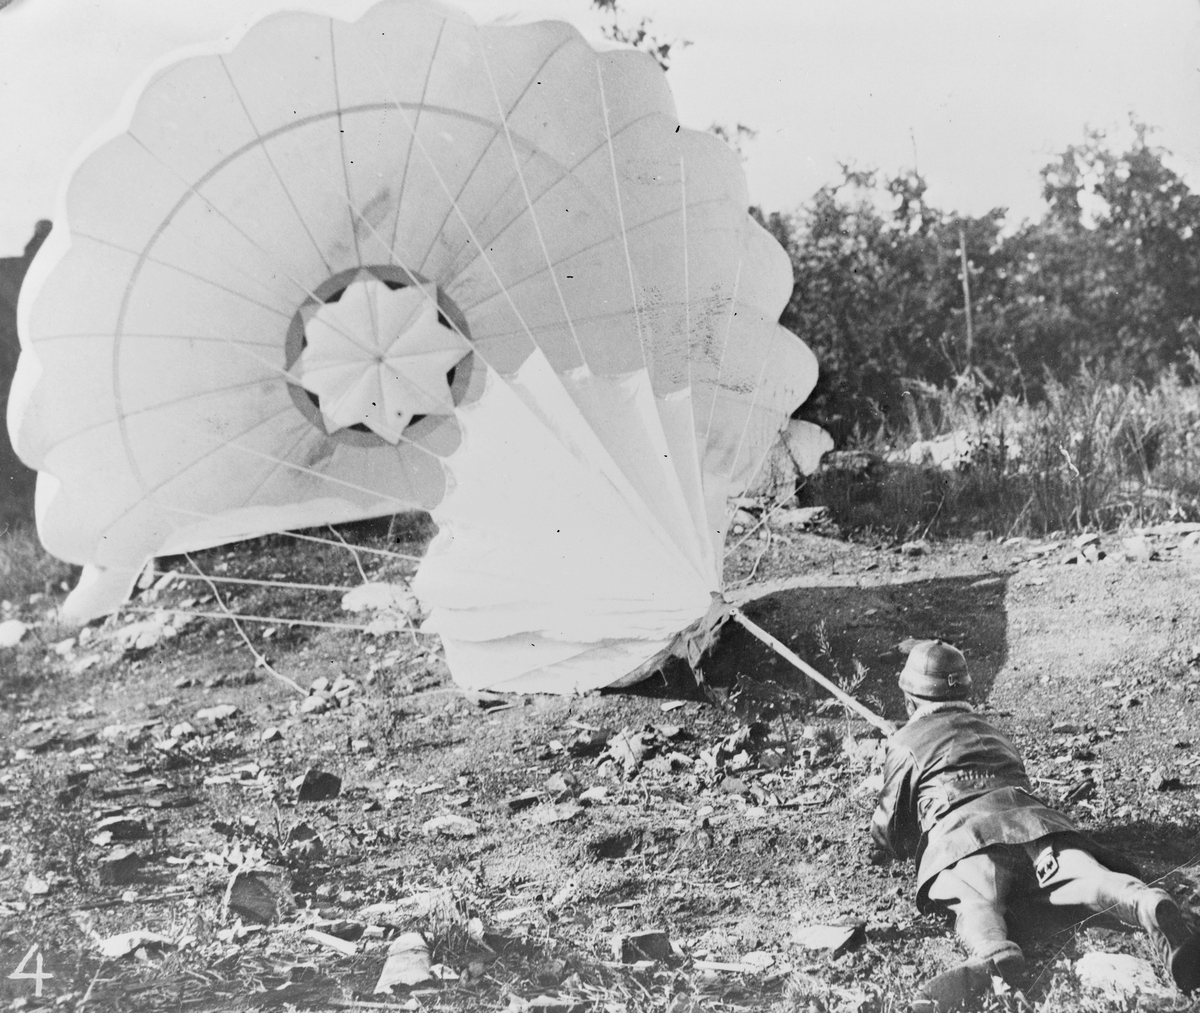 Fallskärmsprov på Malmen, omkring år 1920. En man har landat på marken med en fallskärm framför sig på Centrala Flygverkstäderna i Malmslätt.